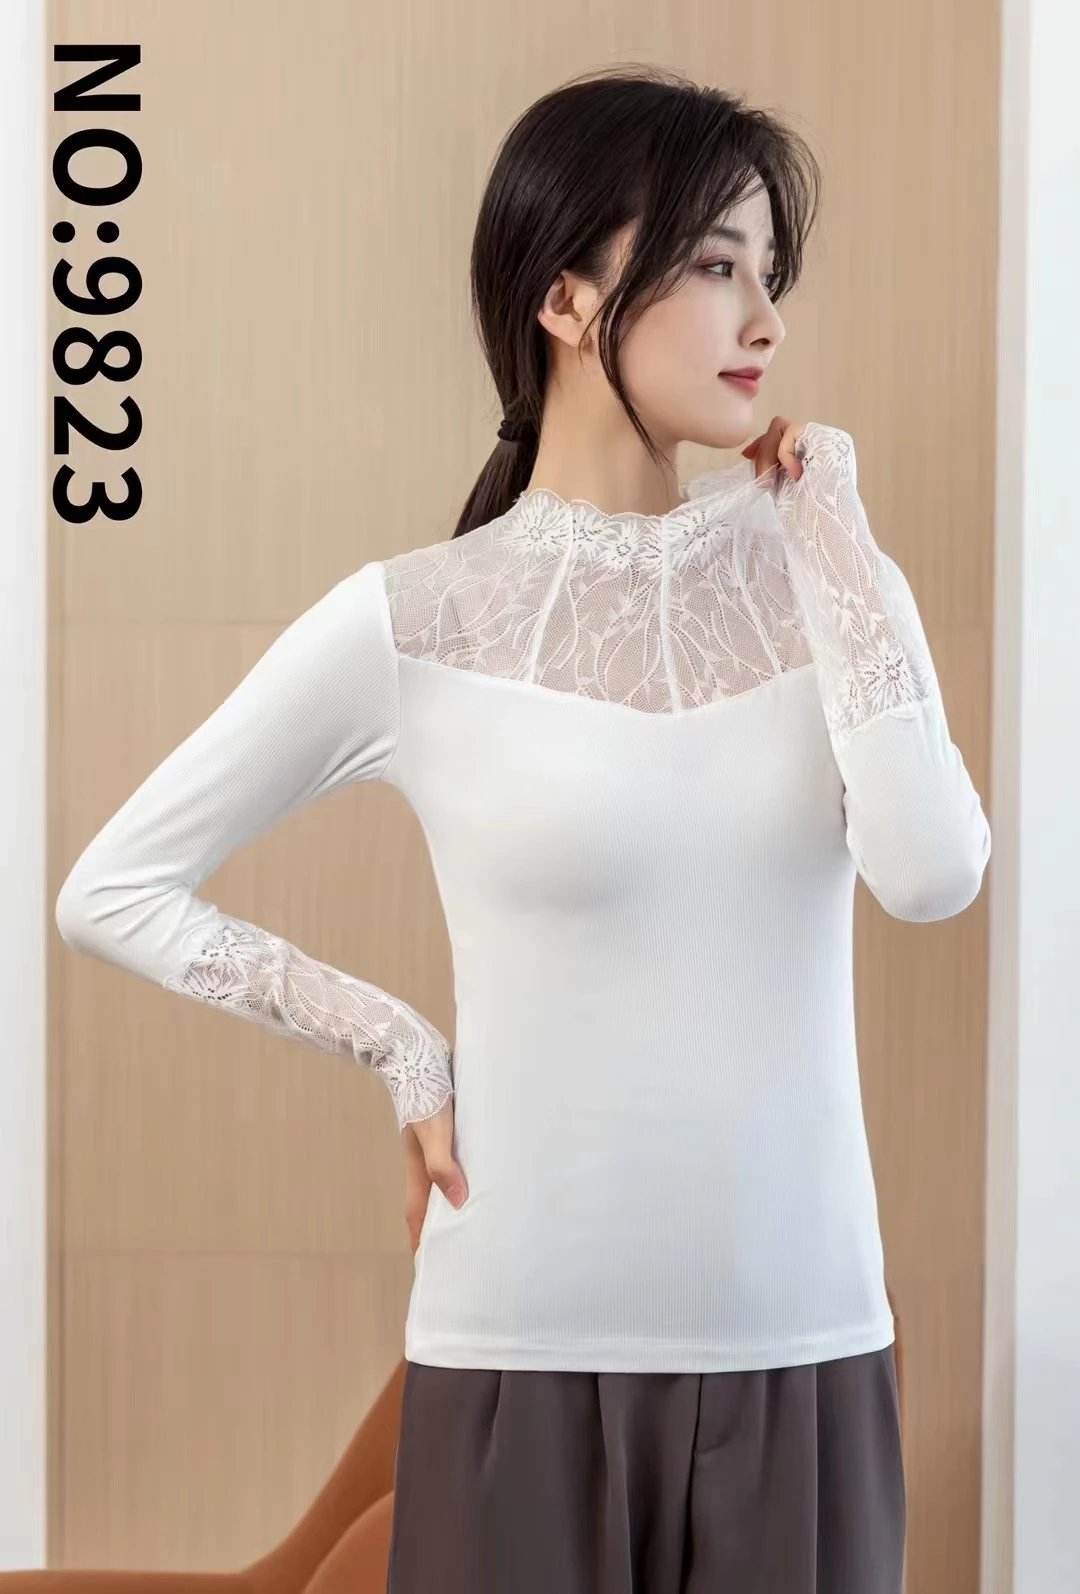 9823# 蕾丝螺纹棉打底衫 舒适蕾丝领设计、性感而不失优雅、怎么选都不会错图